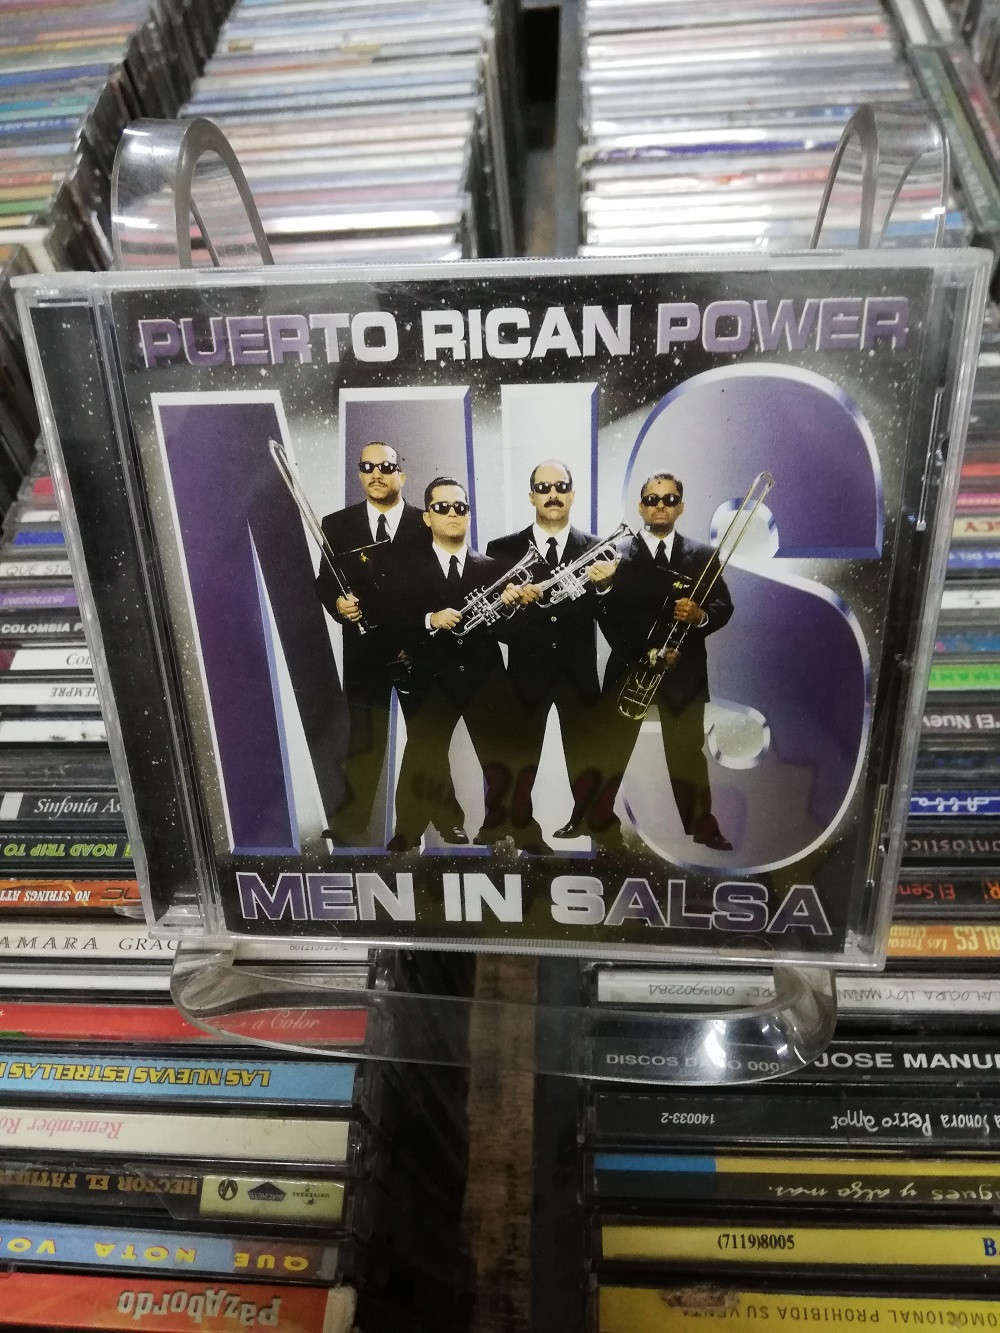 Imagen CD PUERTO RICAN POWER - MEN IN SALSA